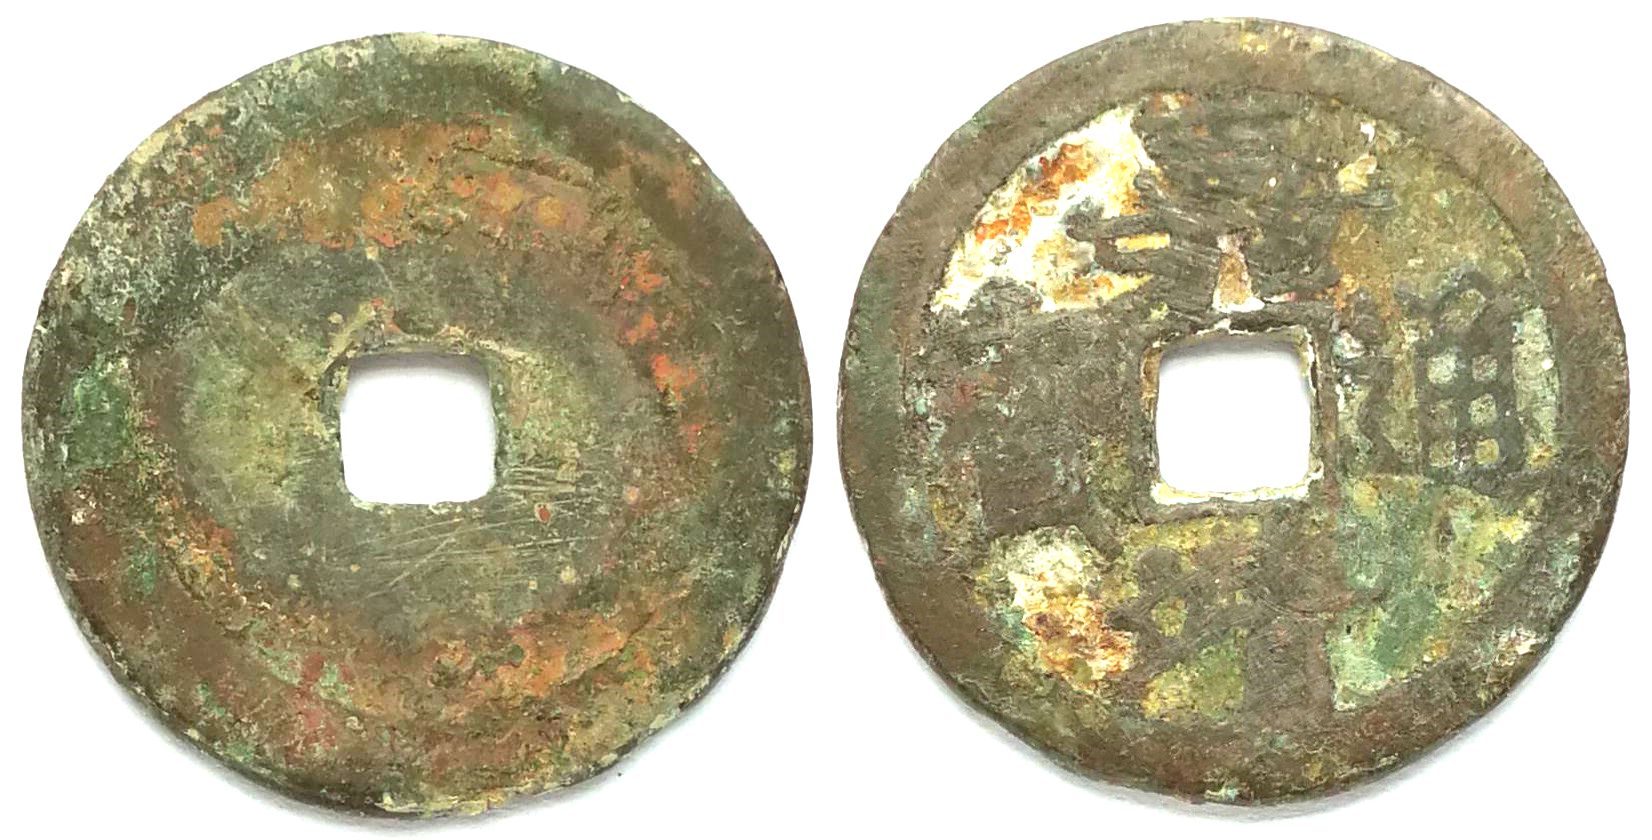 K3492, Jia-Jing Tong-Bao, China Ming Dynasty, AD 1522-1567